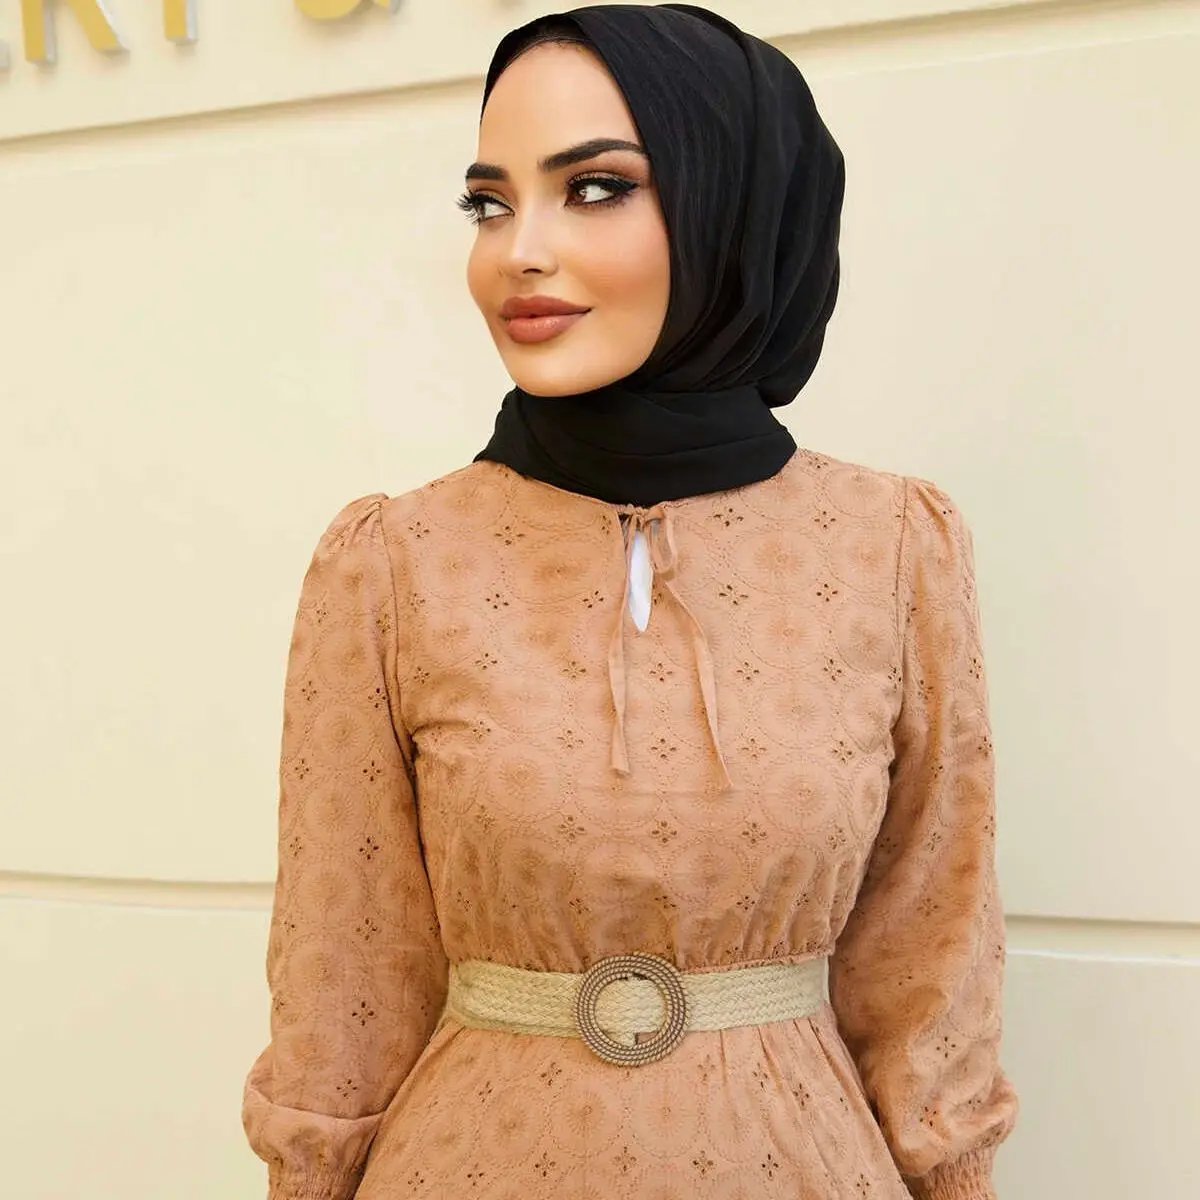 Вечернее платье с вышивкой, Турецкая мусульманская мода, мусульманская одежда, Дубай, эксстанбустили, амбул 2021